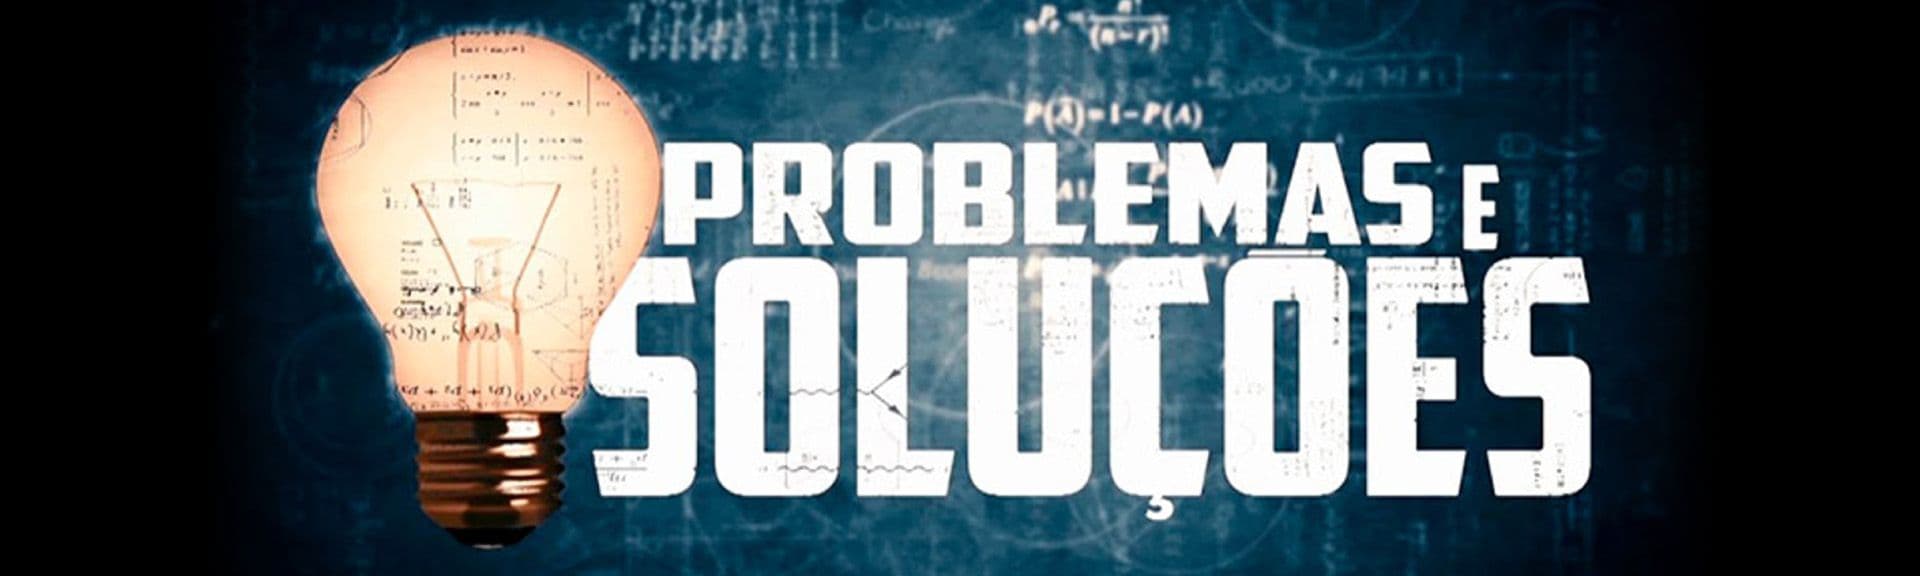 Problemas e Soluções